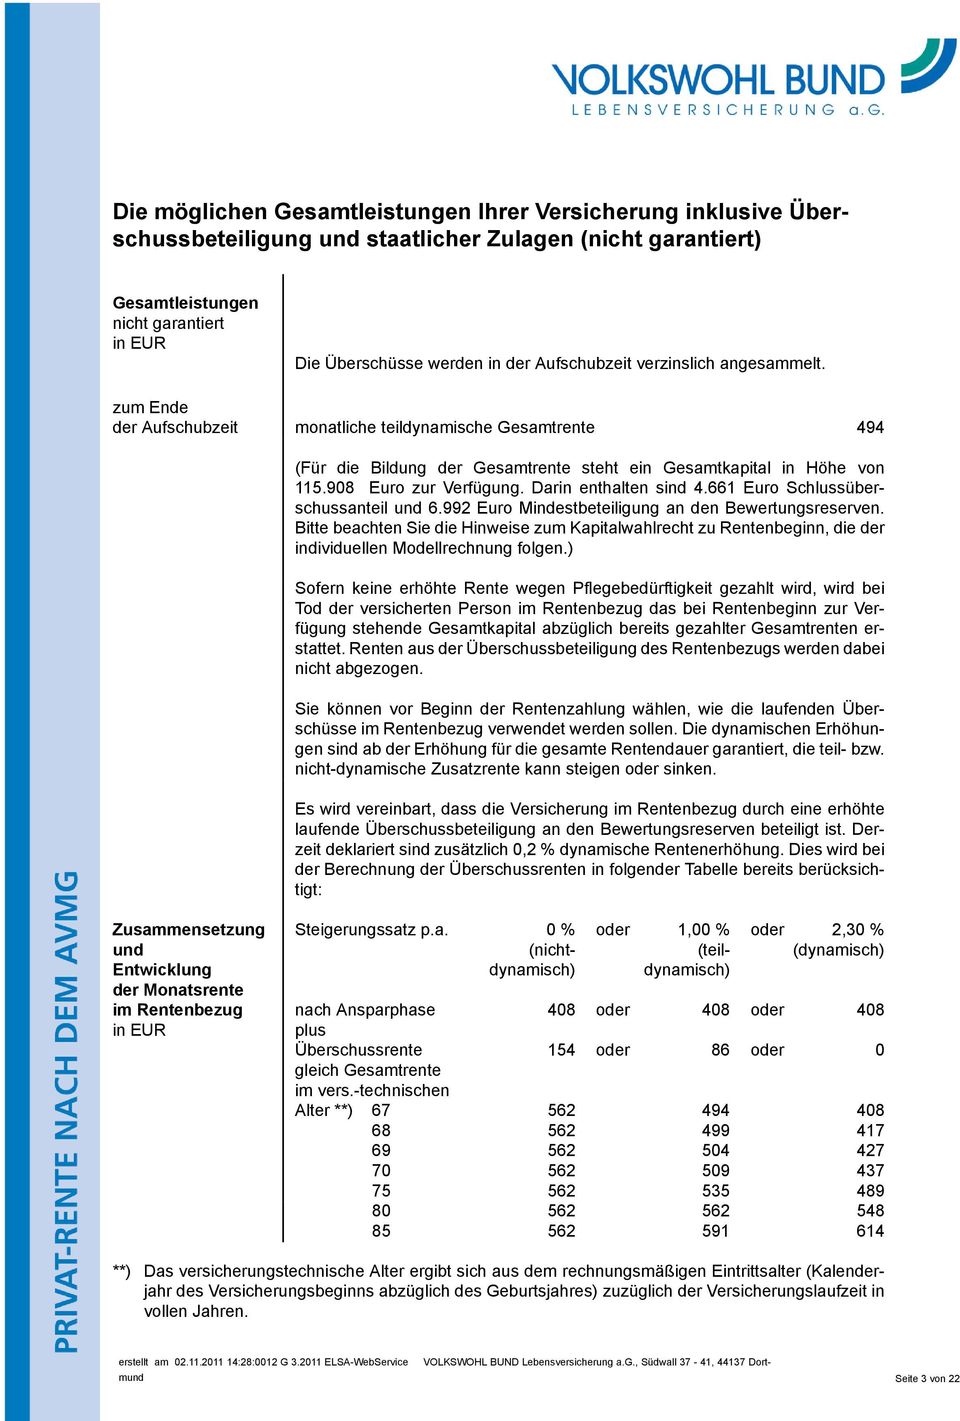 908 Euro zur Verfügung. Darin enthalten sind 4.661 Euro Schlussüberschussanteil und 6.992 Euro Mindestbeteiligung an den Bewertungsreserven.